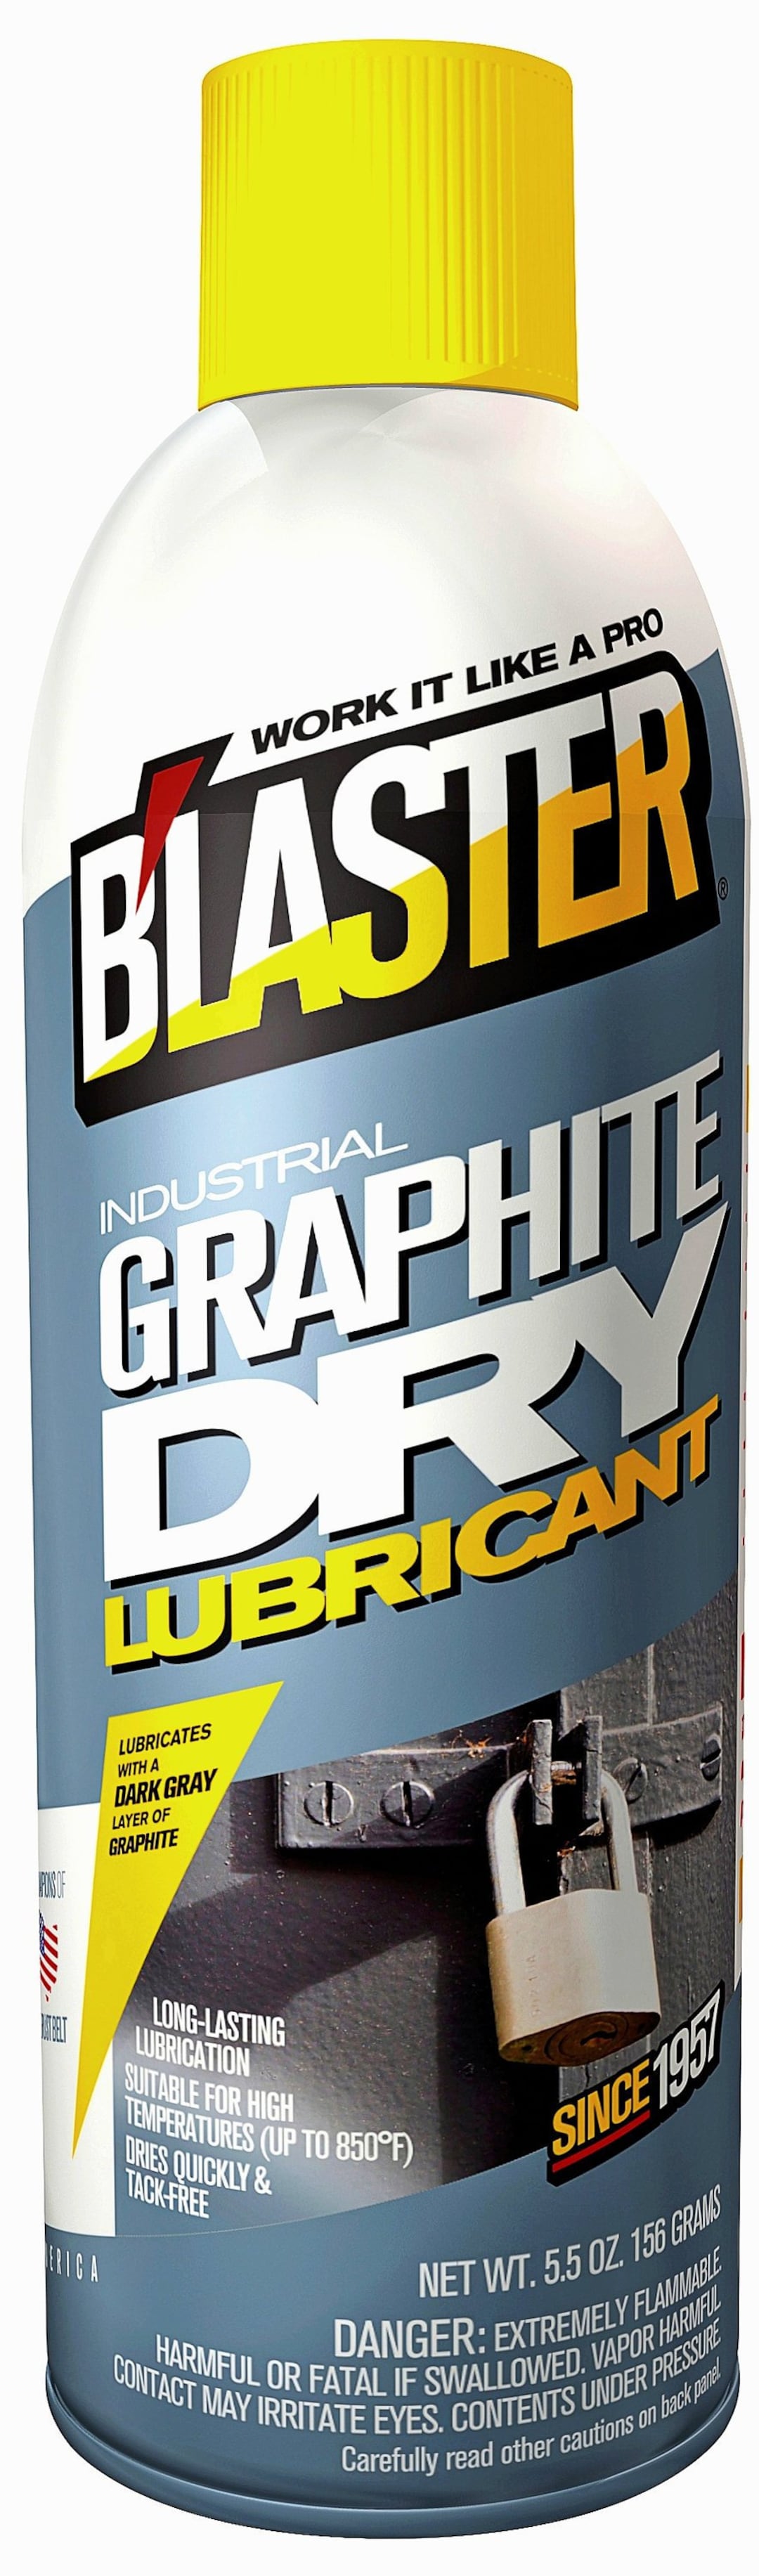 Blaster GRAPHITE Aérosol sec spraY Lubrifiant Lubrification pour